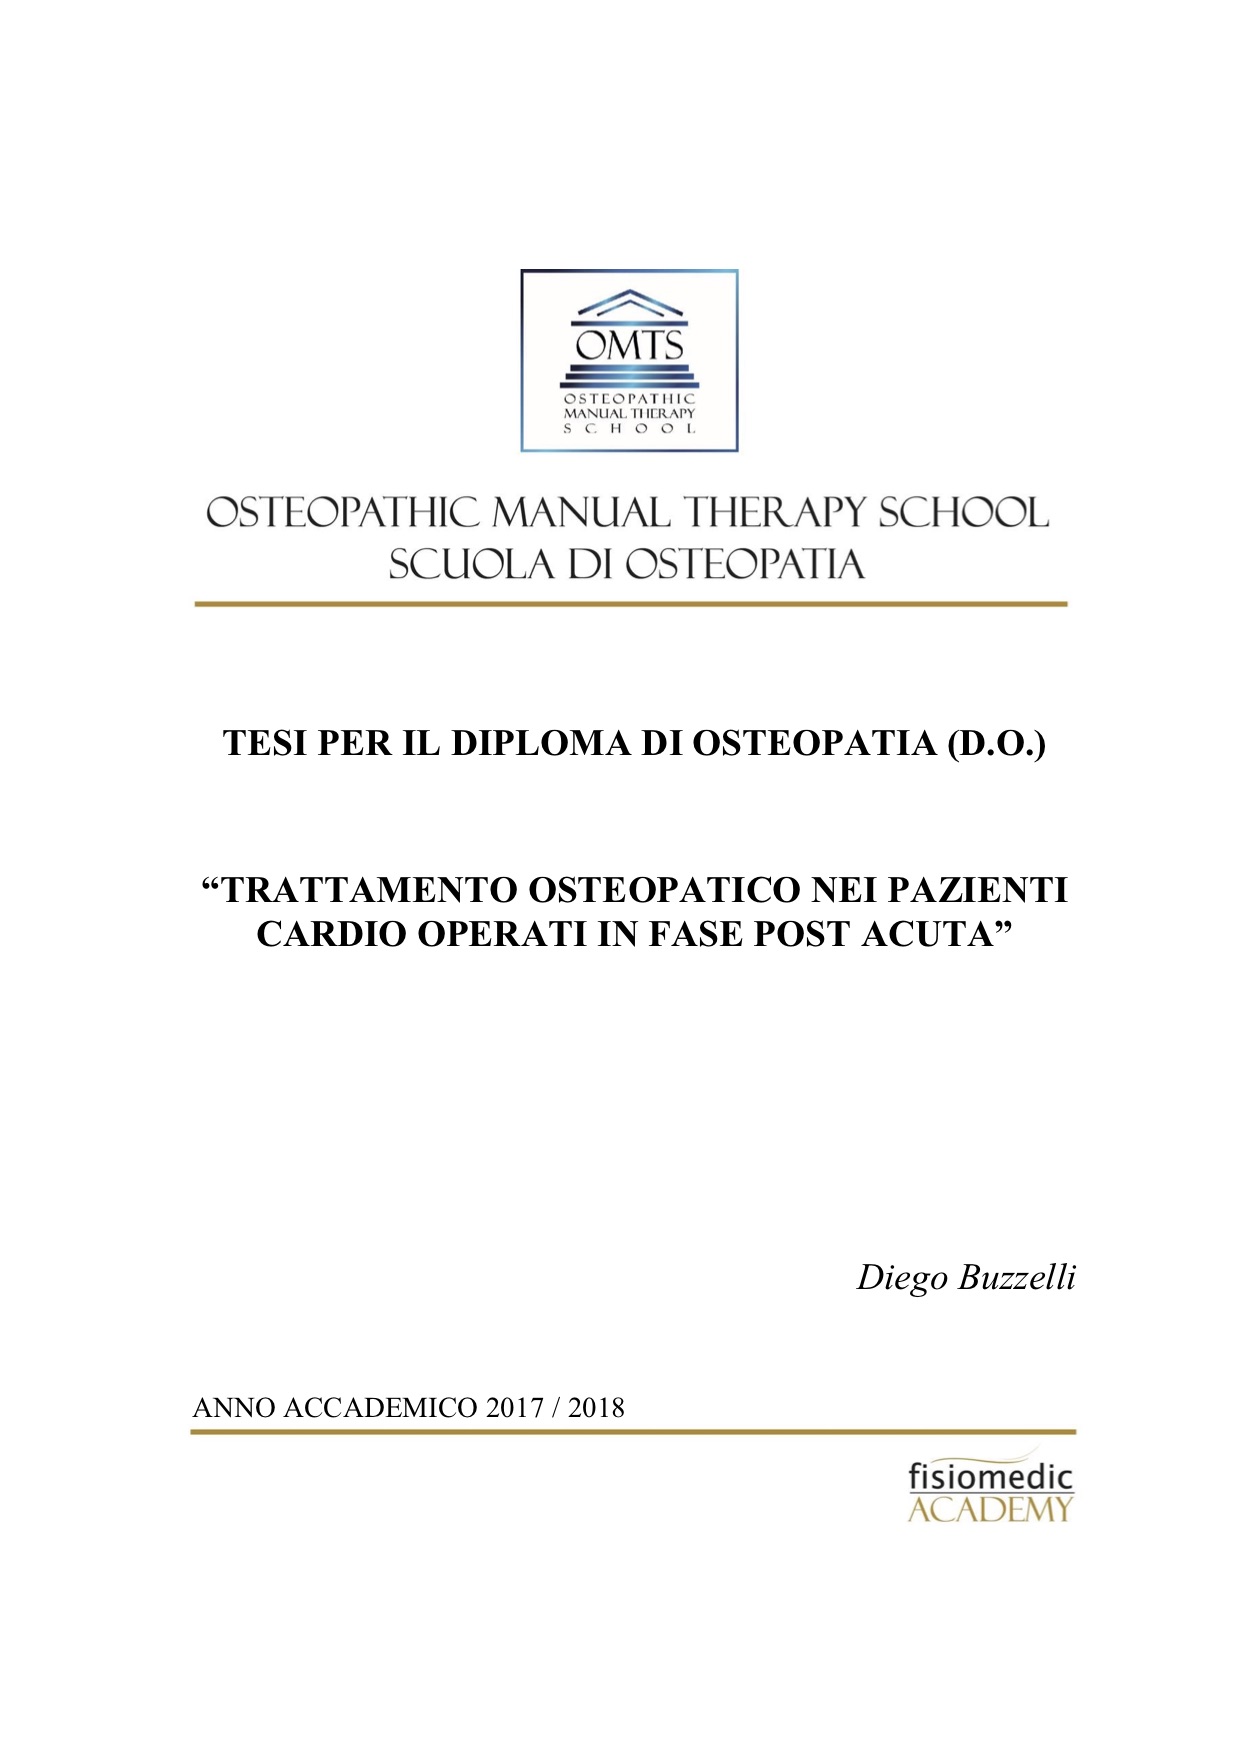 Diego Buzzelli Tesi Diploma Osteopatia 2018